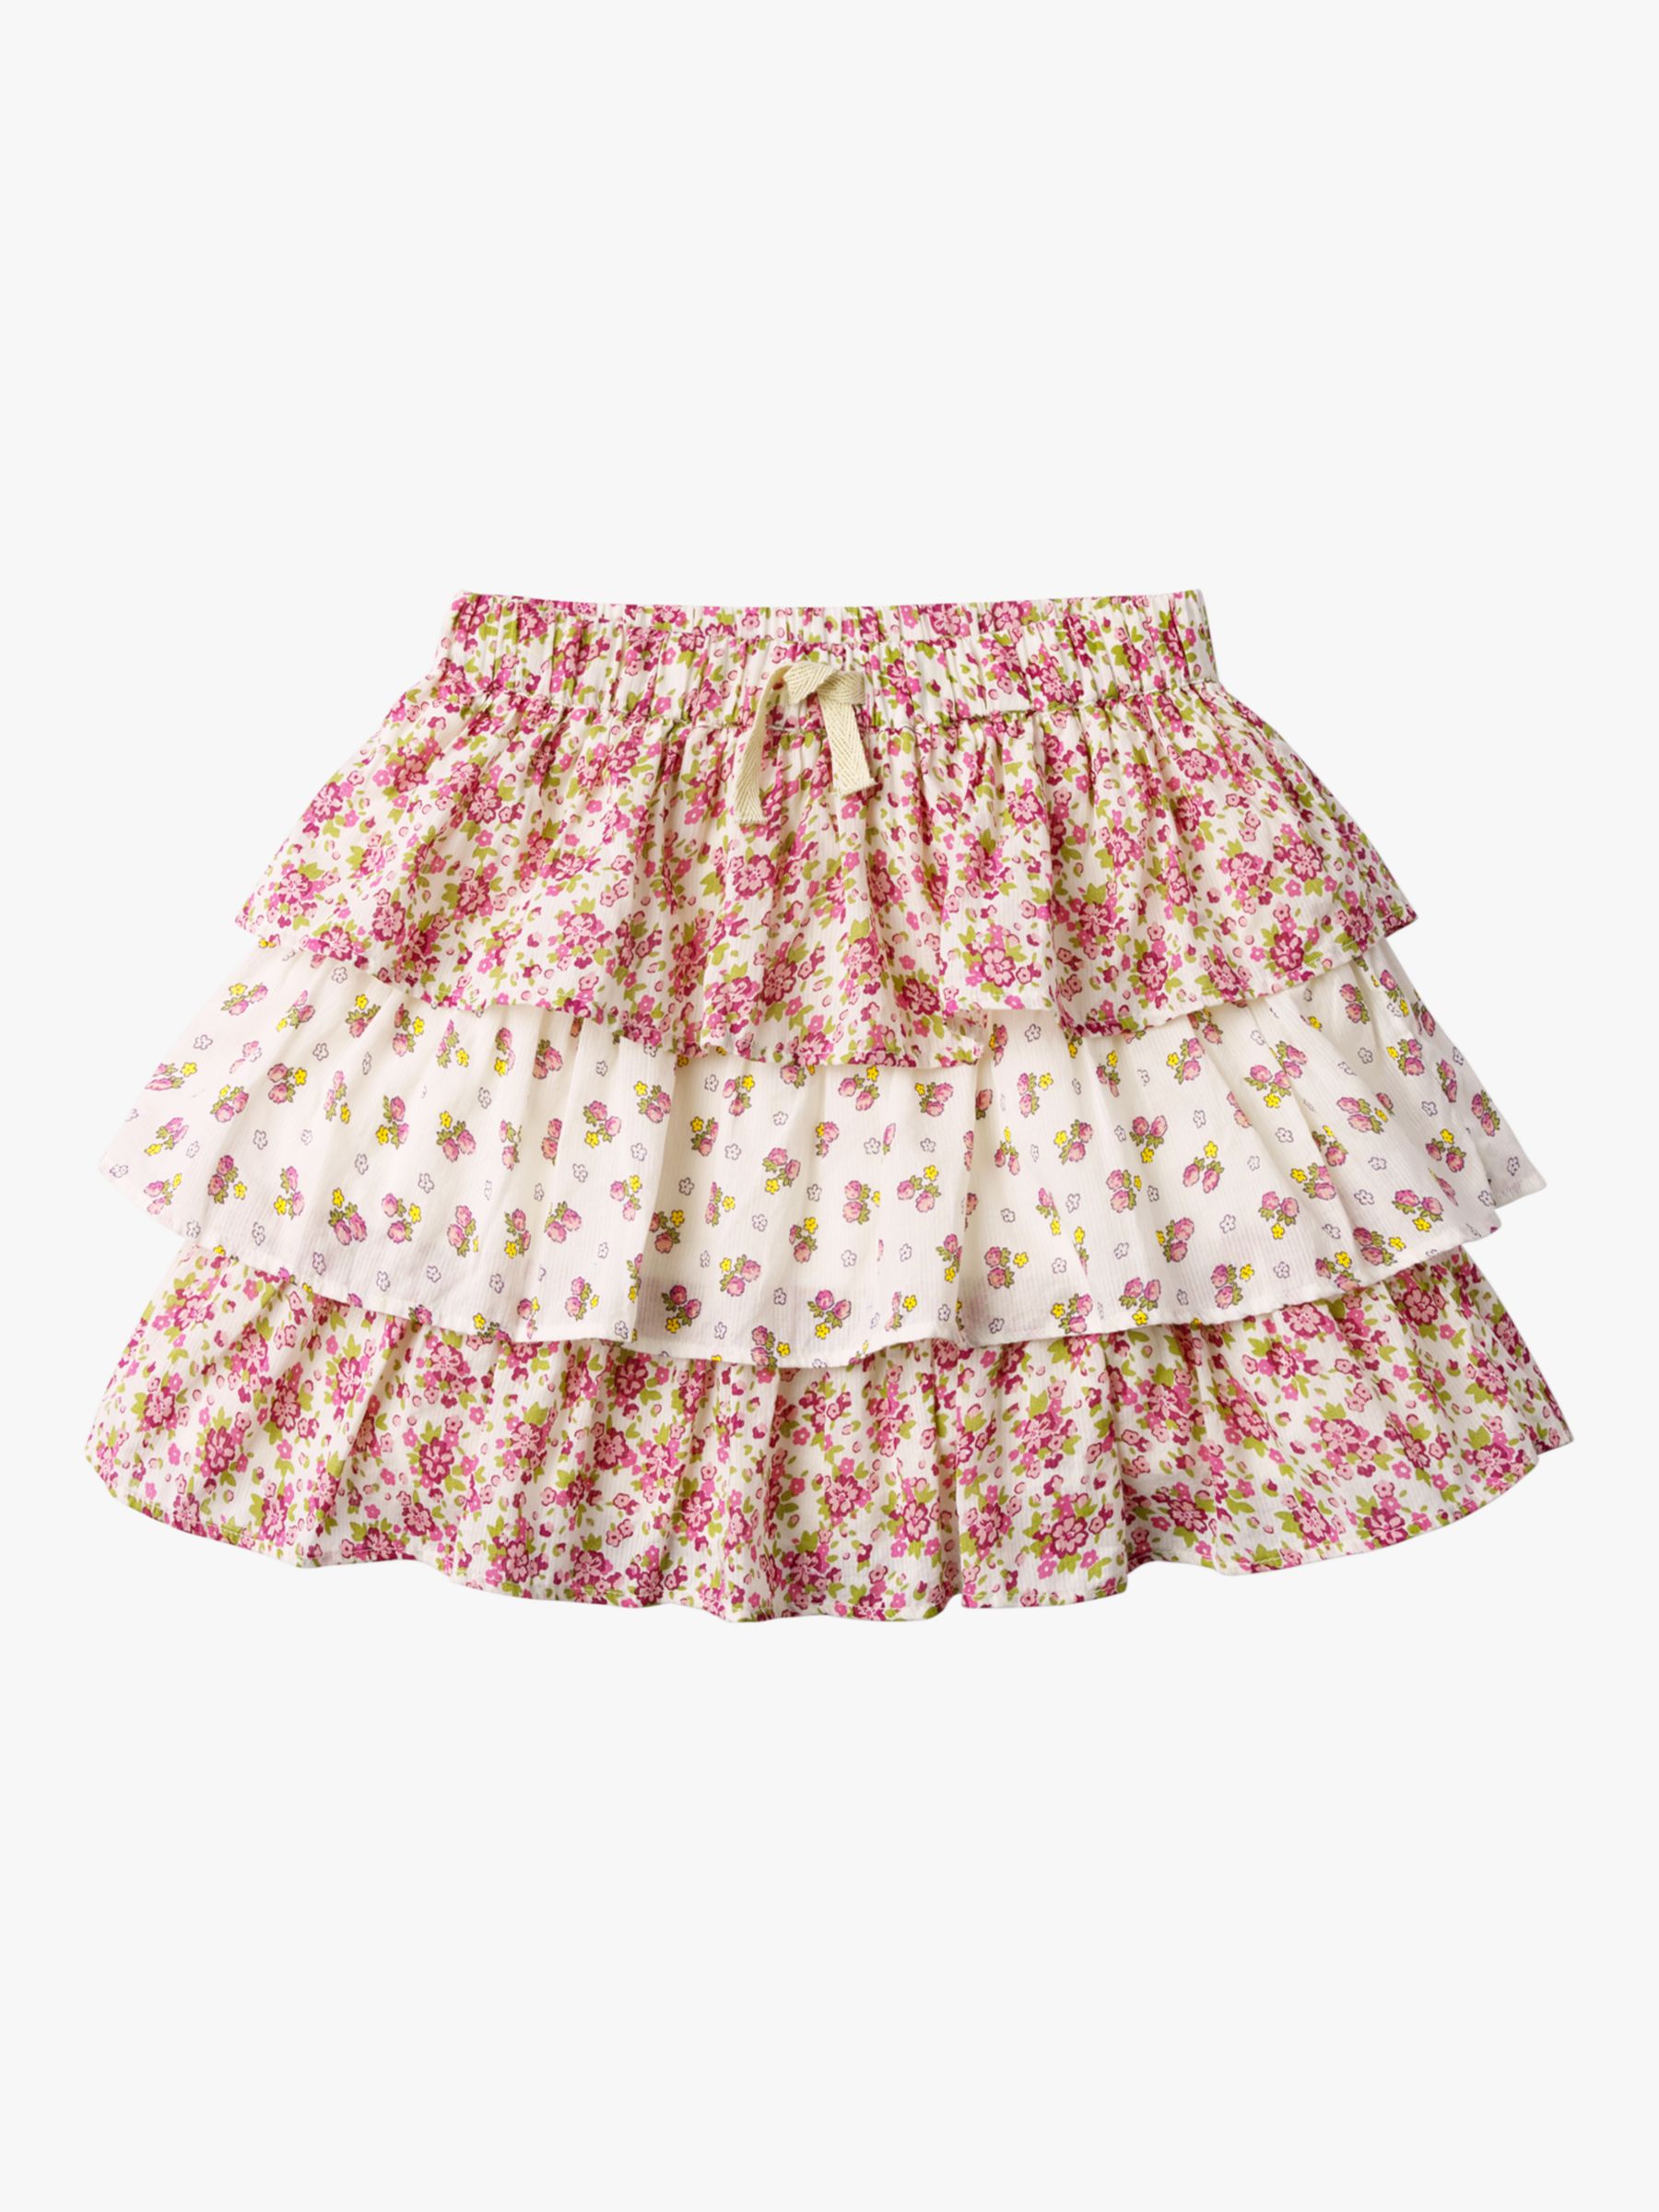 Mini Boden Girls' Vintage Floral Skirt, Ivory/Plum